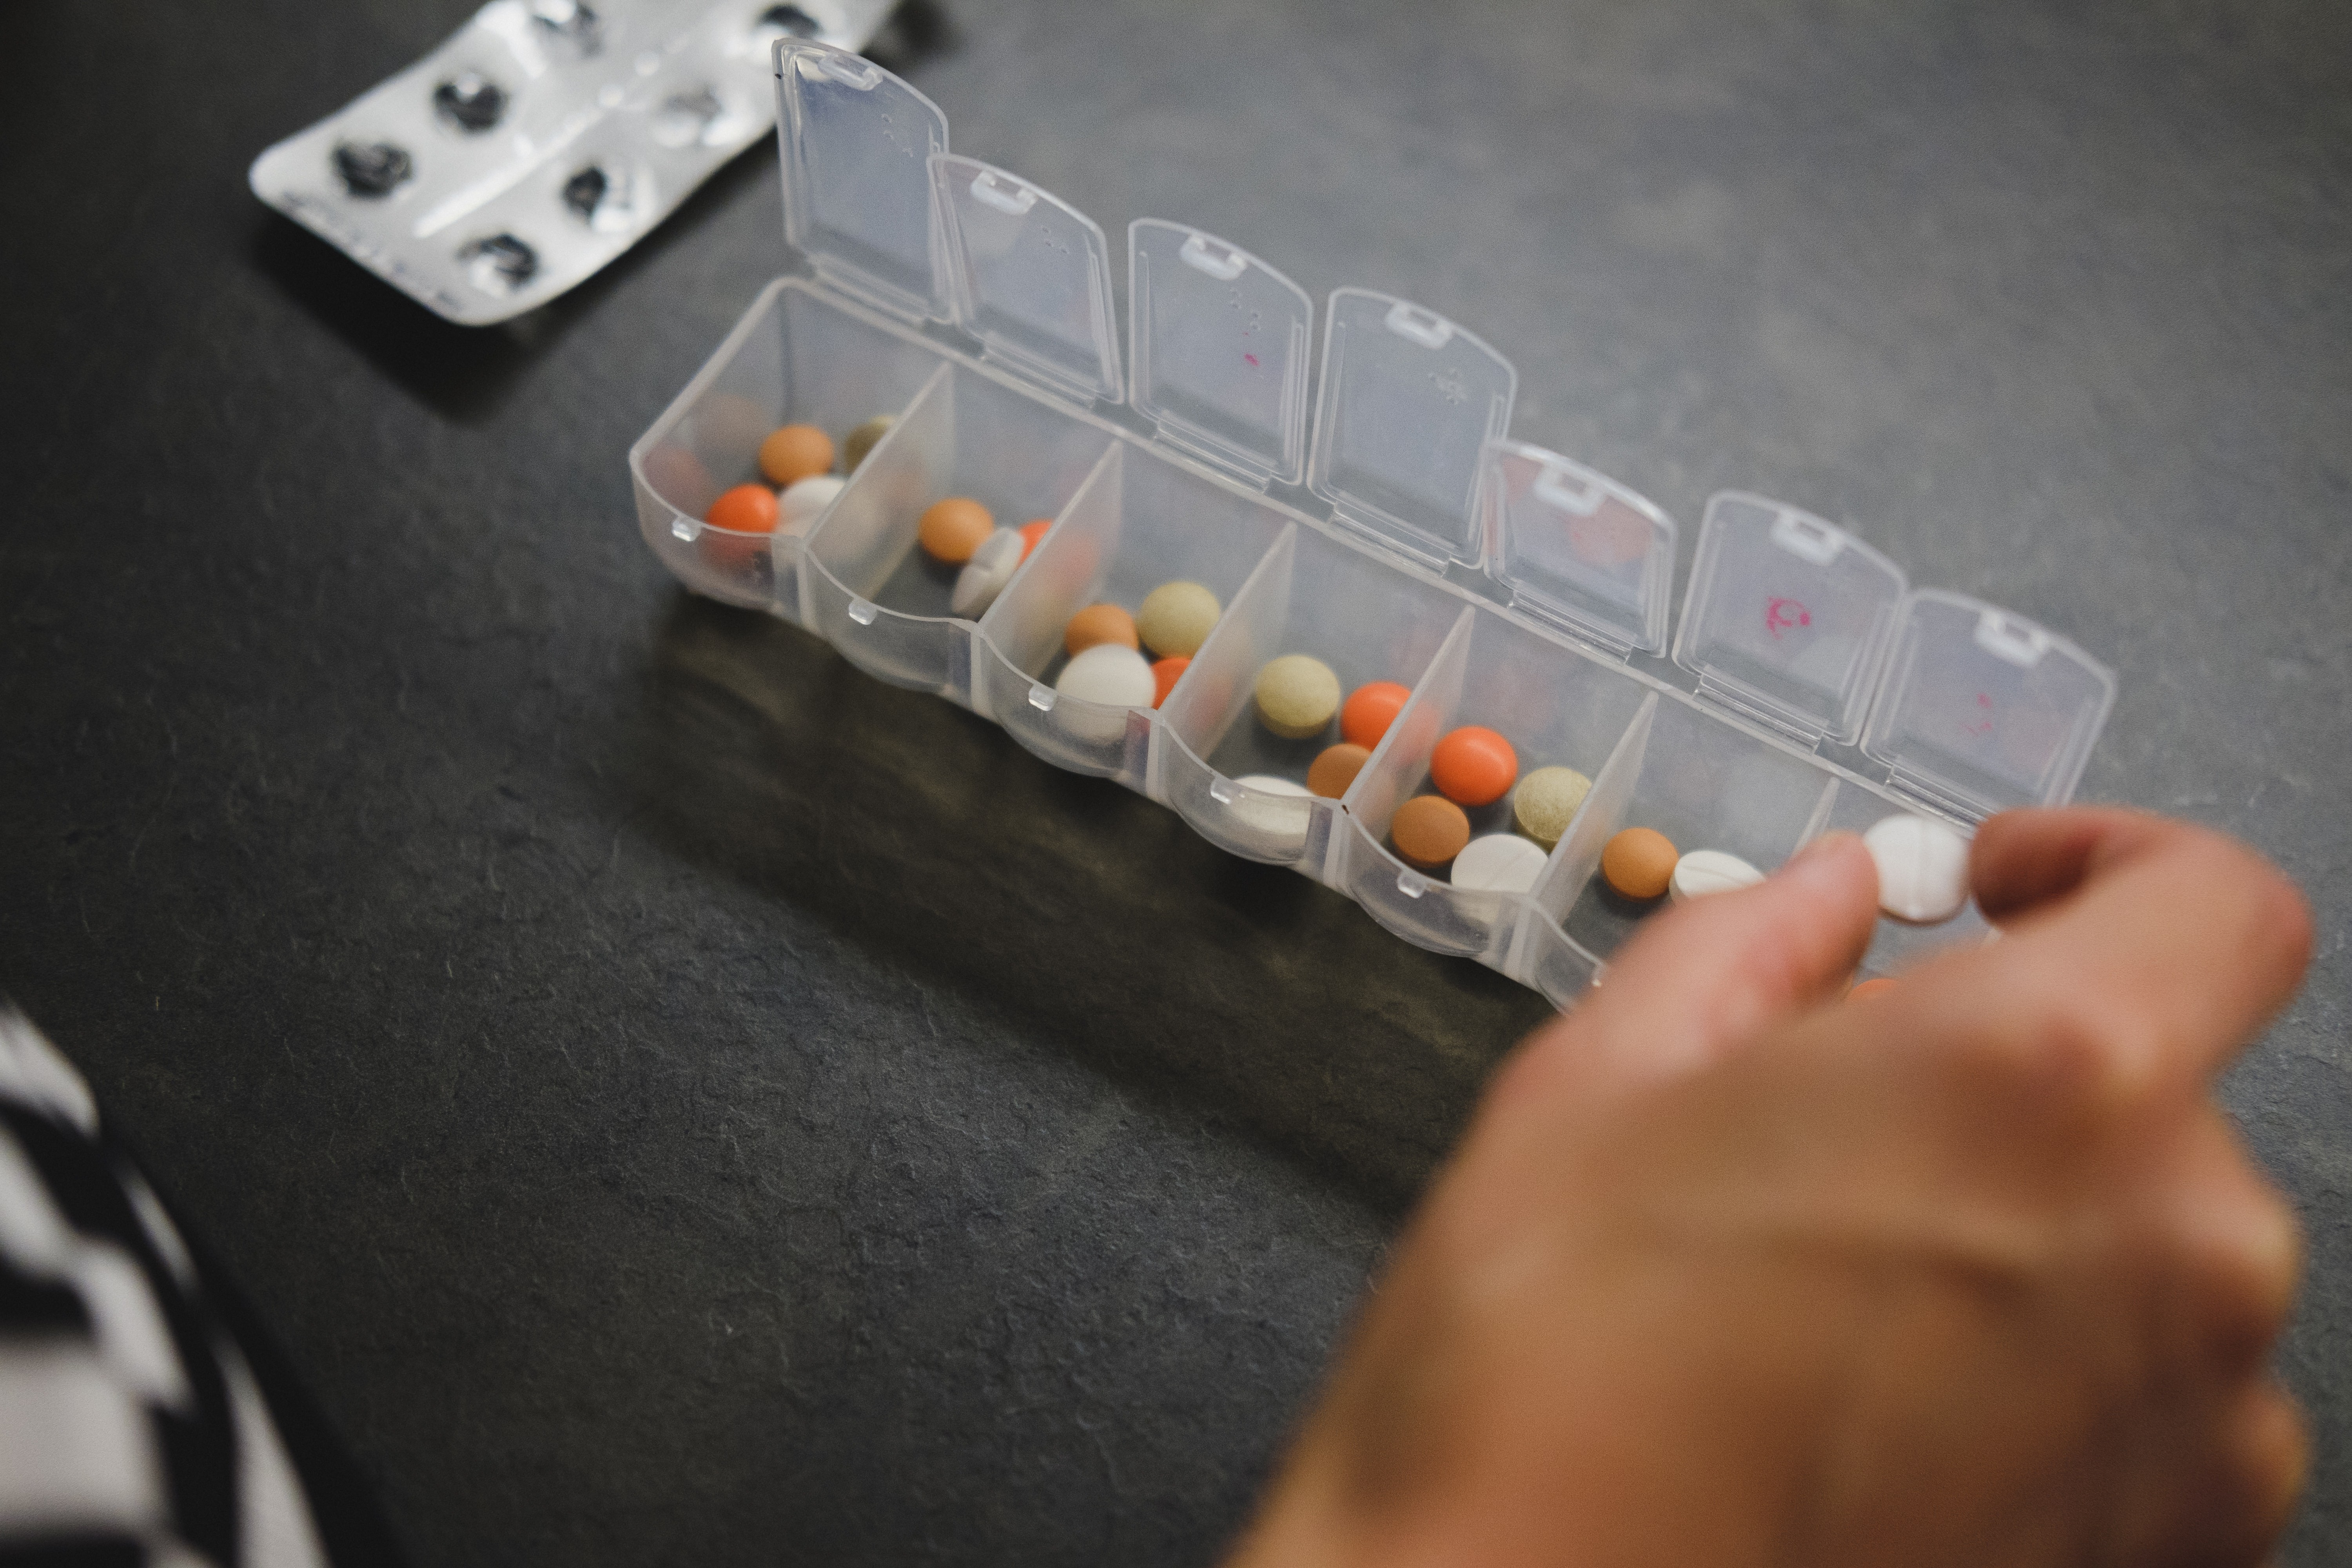 Falta de testes em mulheres leva a erros na indicação de medicamentos (Foto: Unsplash)